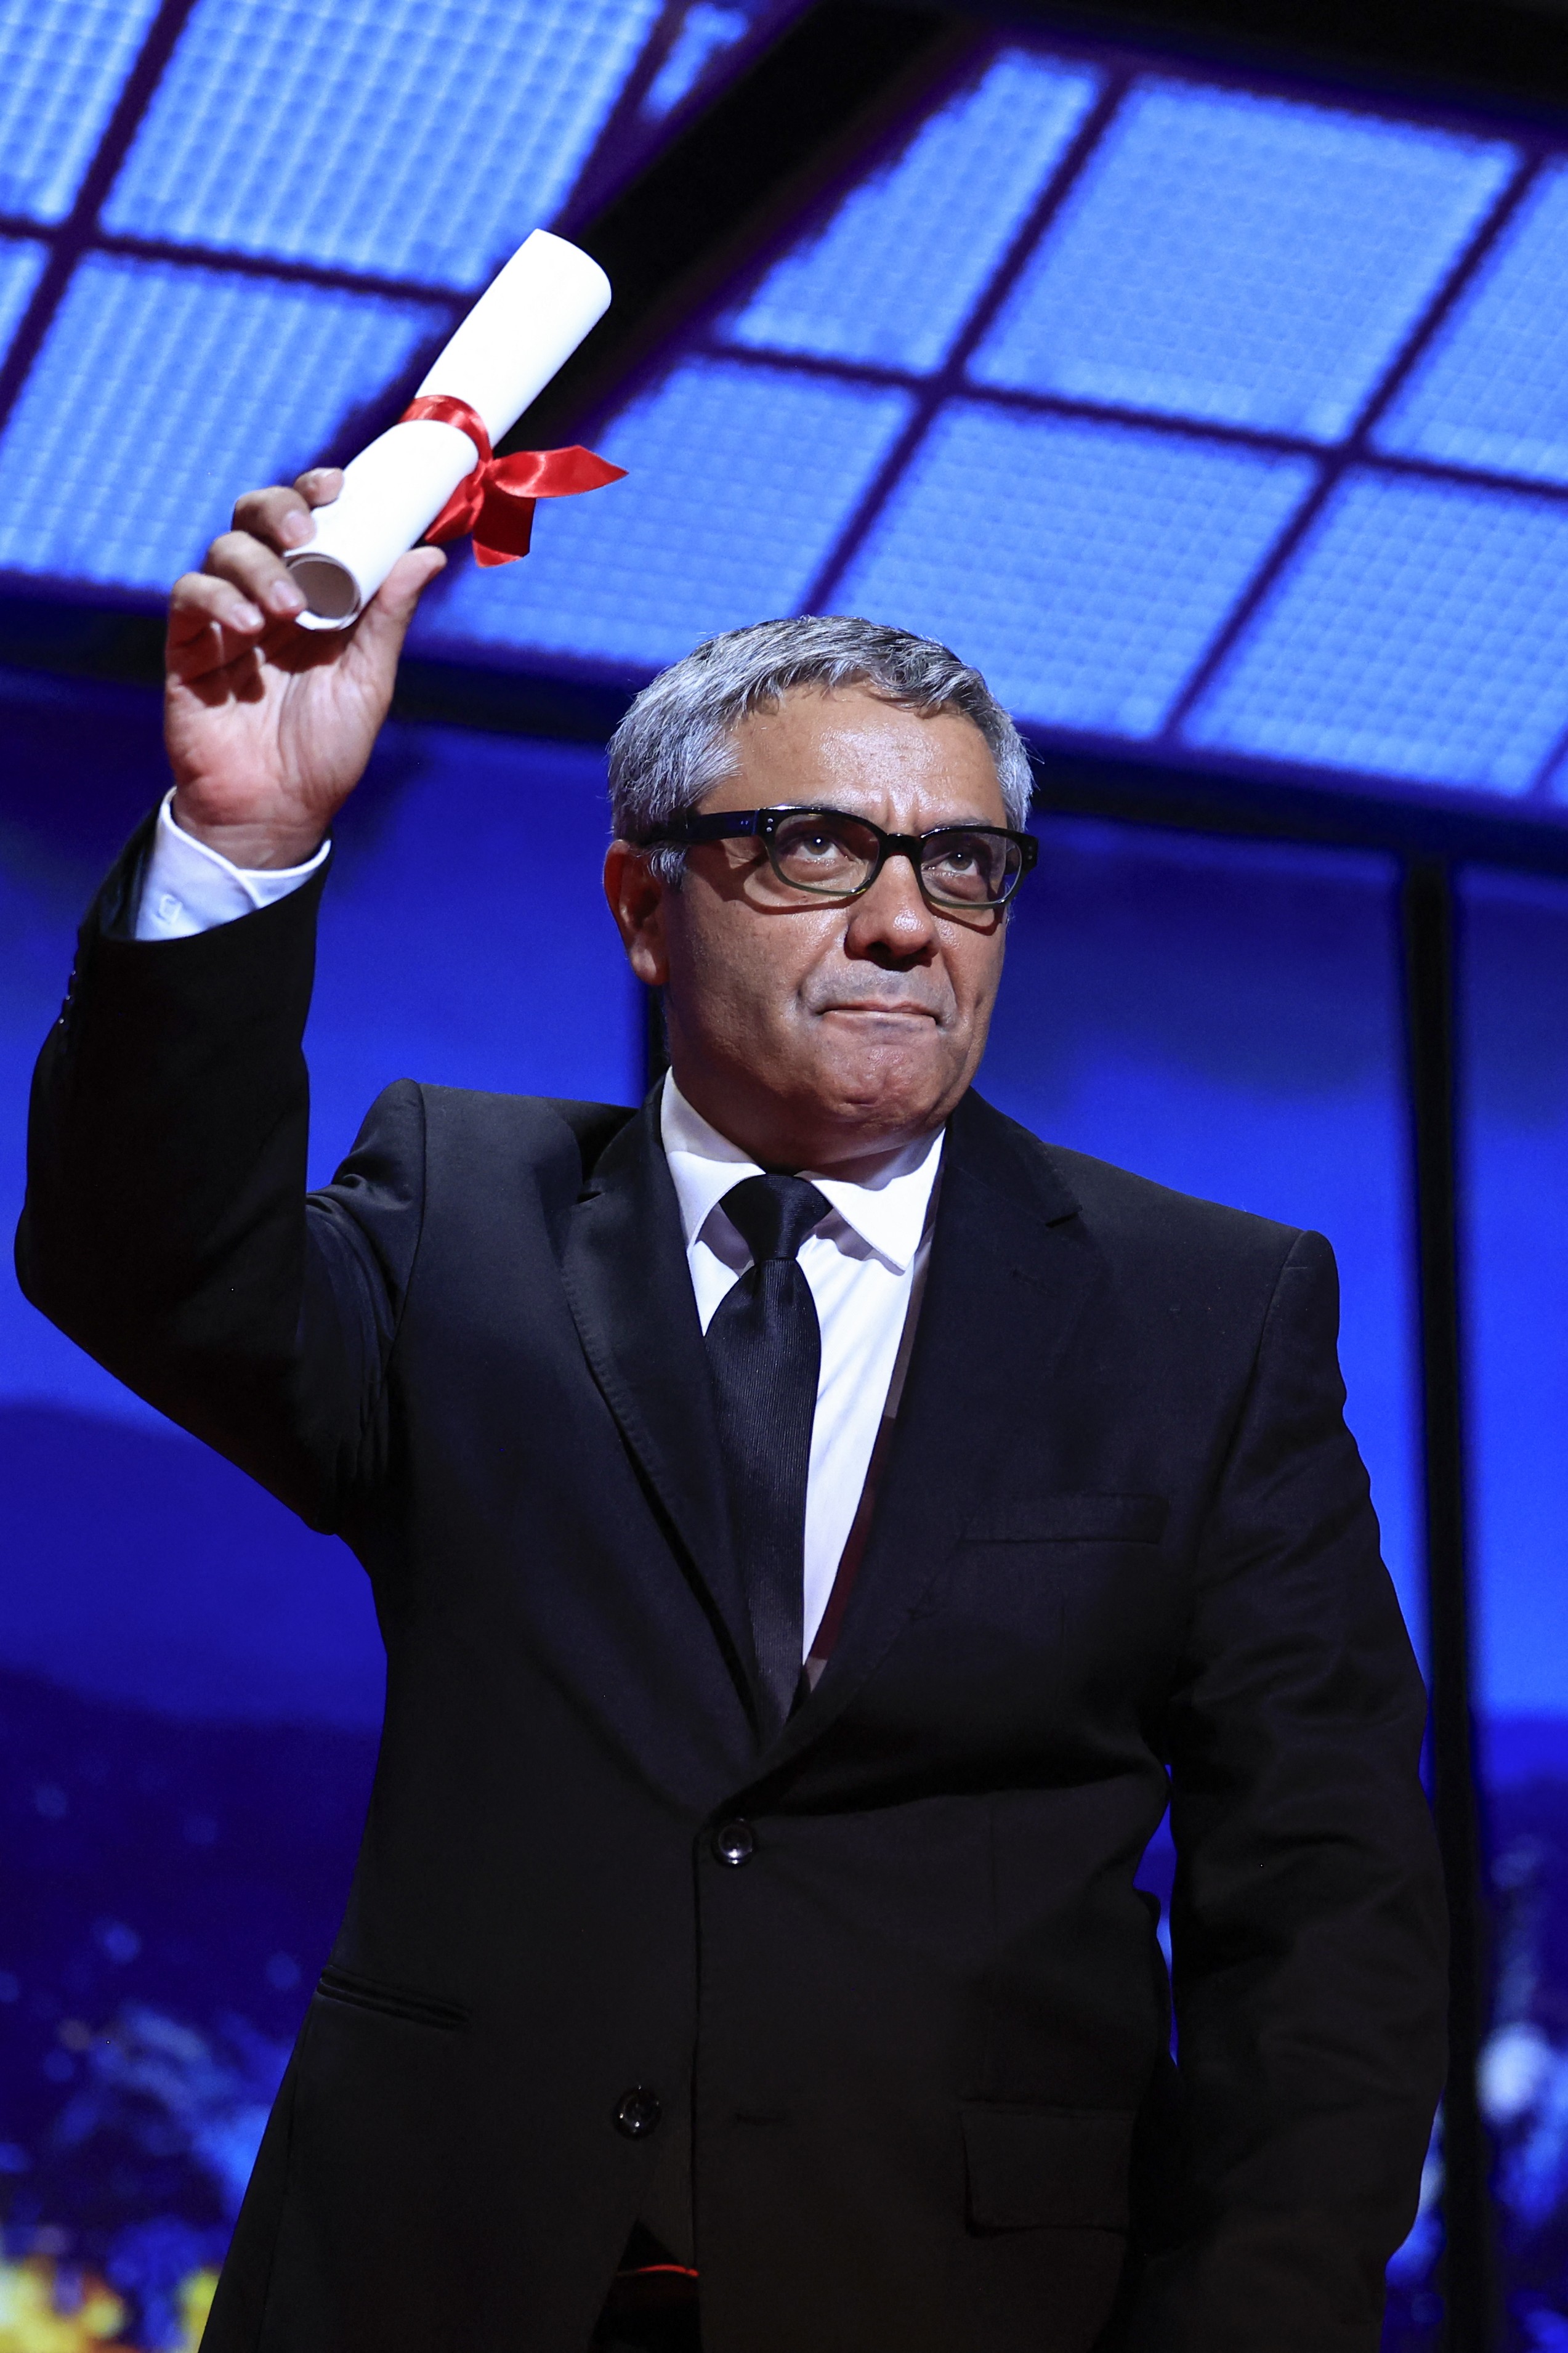 Diretor iraniano que precisou fugir de seu país vence prêmio especial do júri no Festival de Cannes